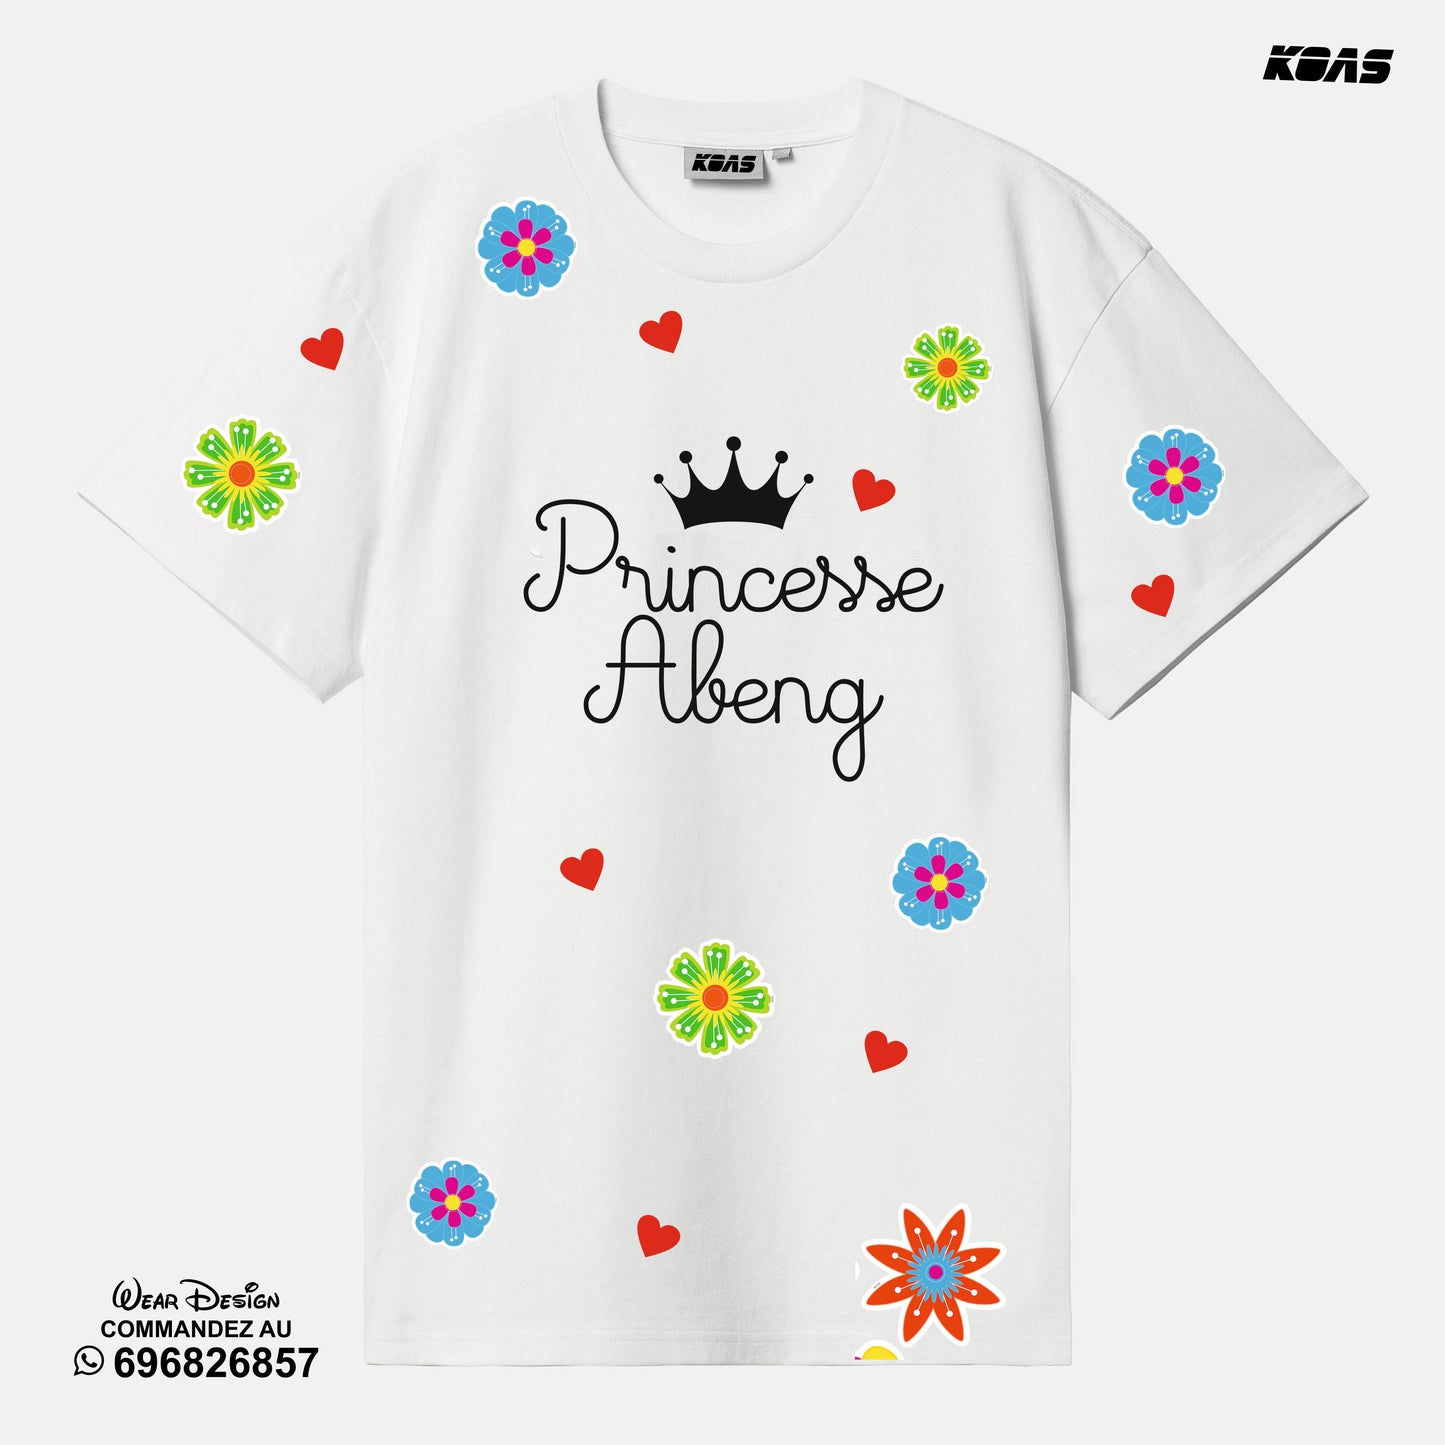 Princesse - Tshirt